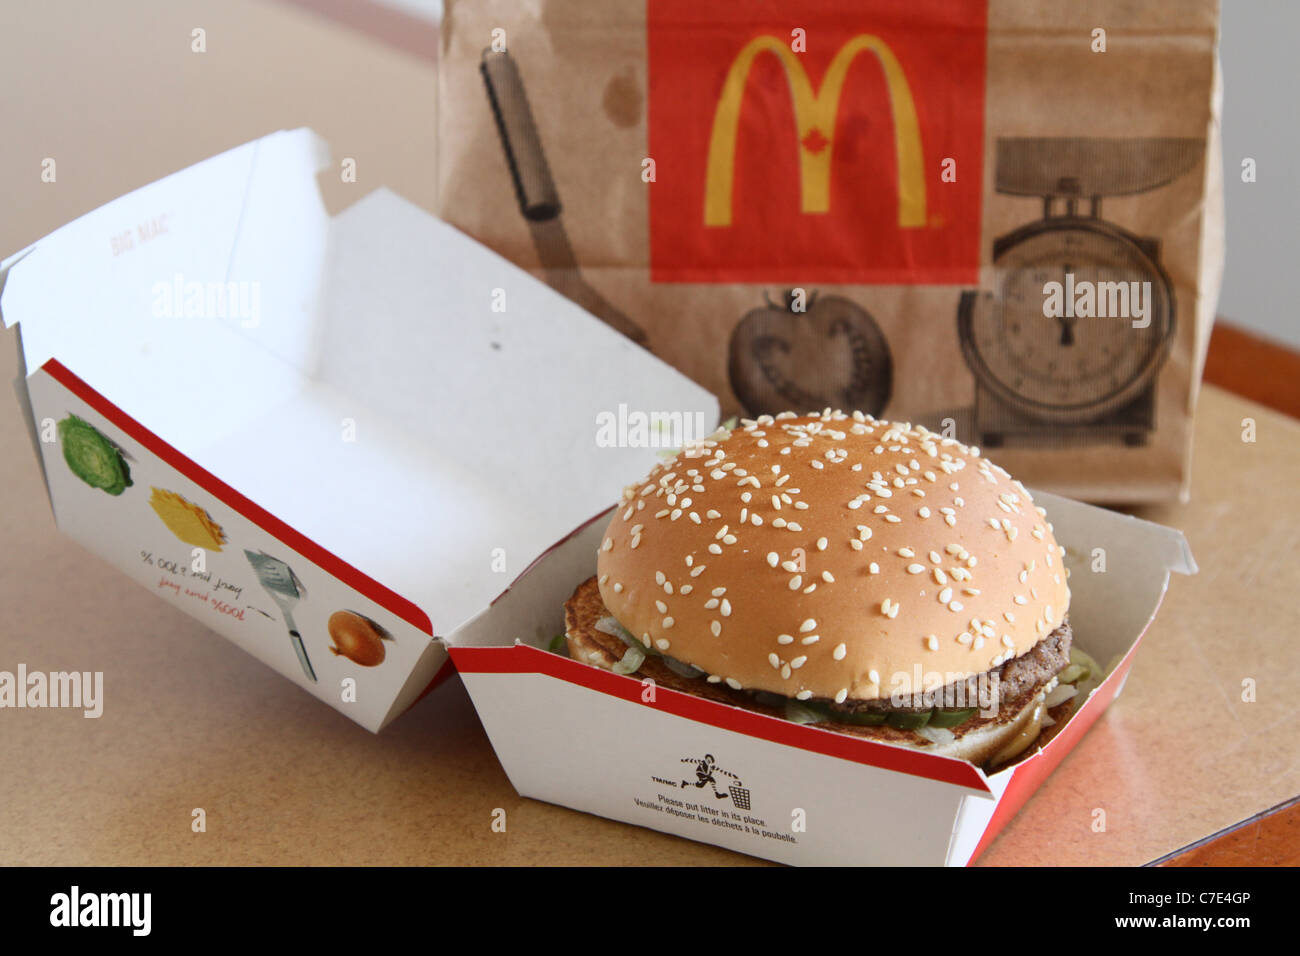 mcdonalds mcdonald bigmac 'big mac' burger calorie Stock Photo